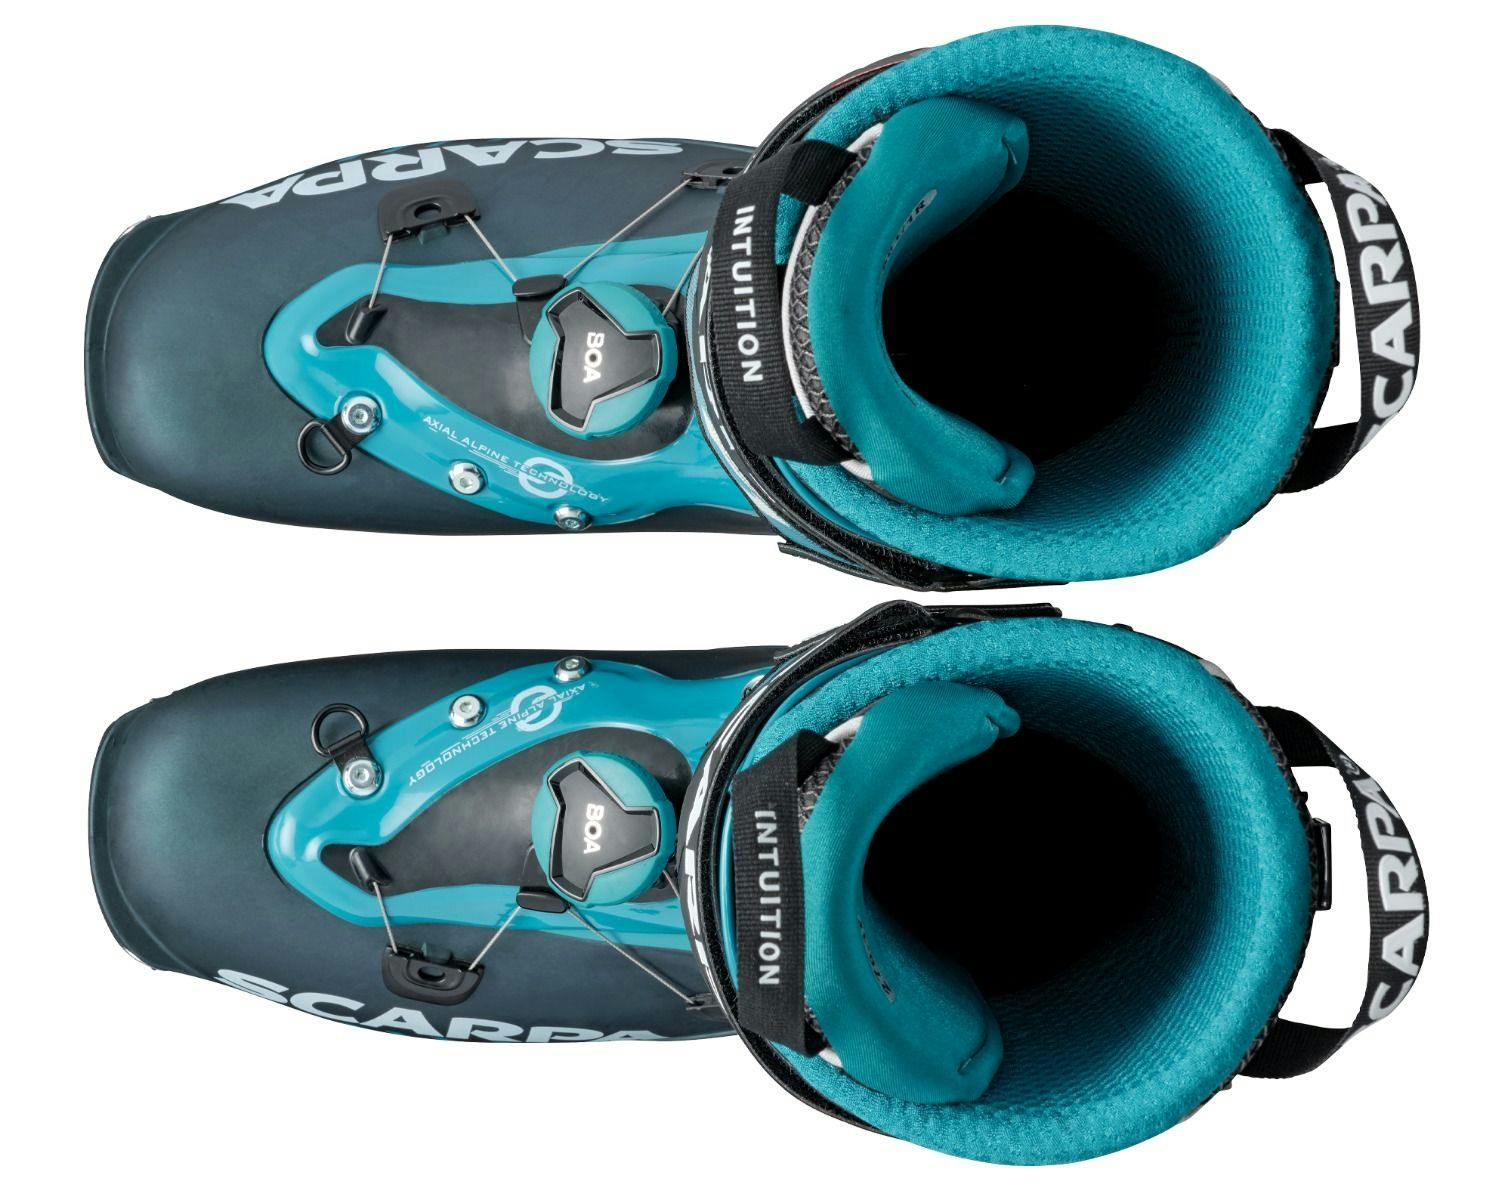 Scarpa F1 95 Ski Boots · 2022